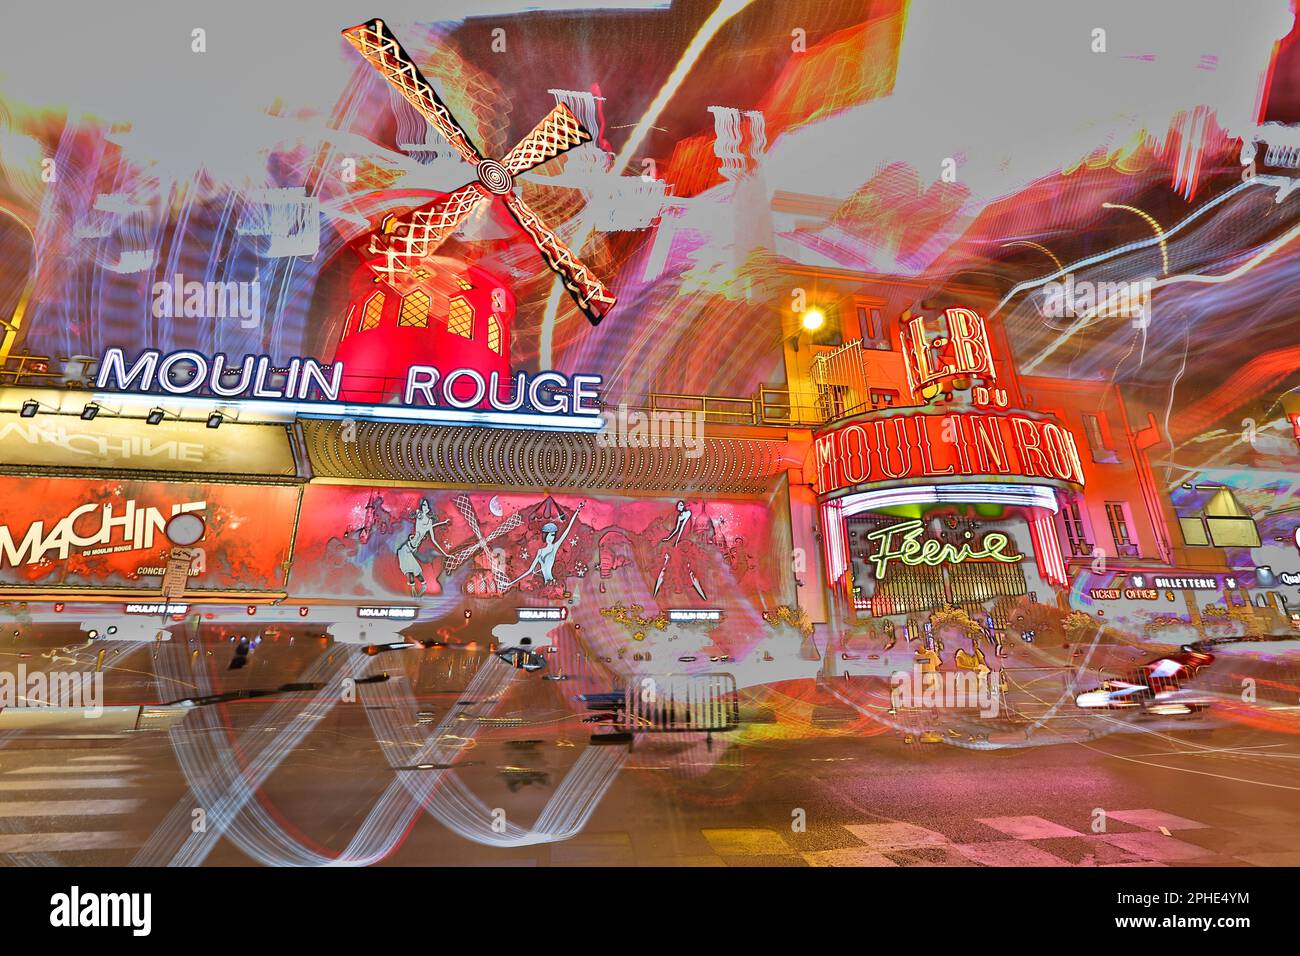 Illustrationsbild des Moulin Rouge, legendäres historisches Pariser Kabarett in Pigalle, Montmartre, Paris, Frankreich, Repräsentationsbild Stockfoto